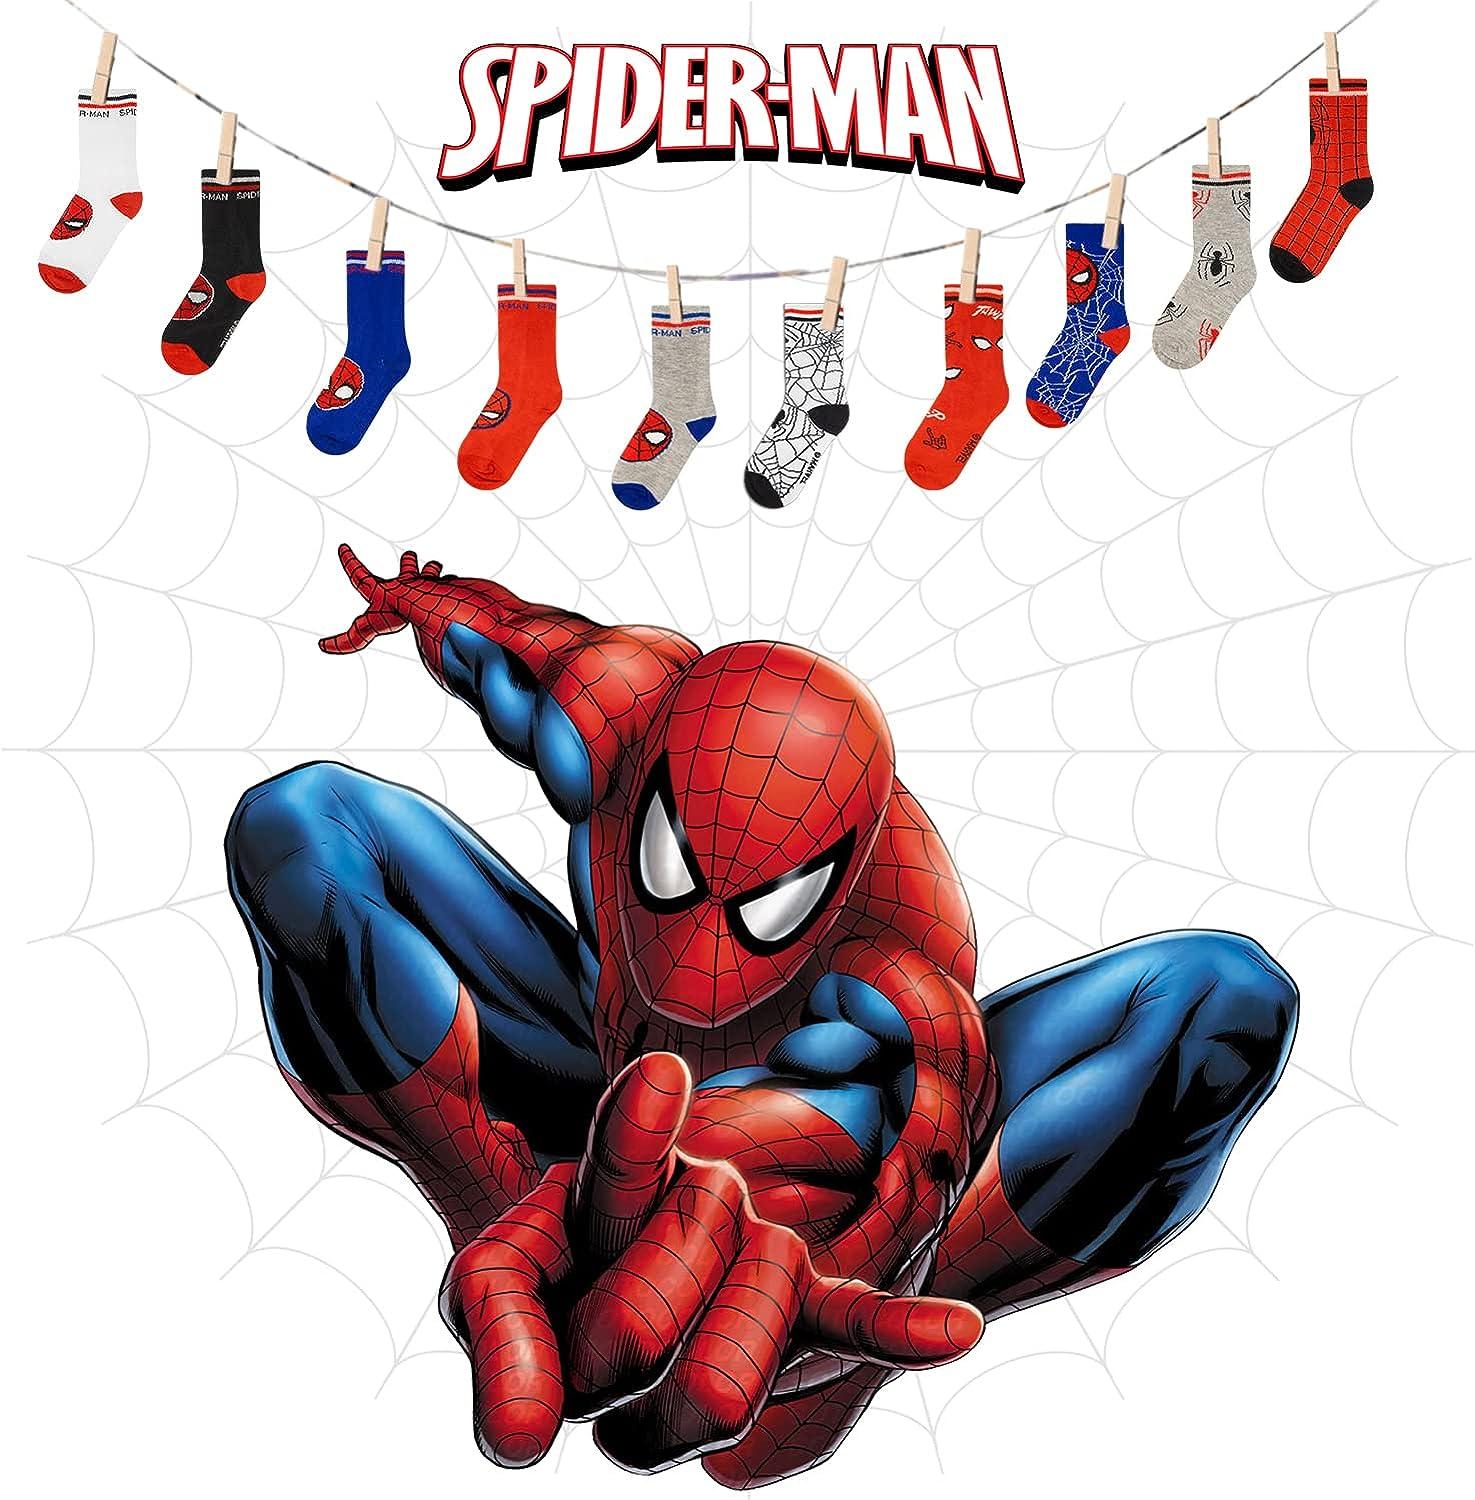 Marvel Spiderman Grip Socks, Socks for Toddler Boys, 10 India